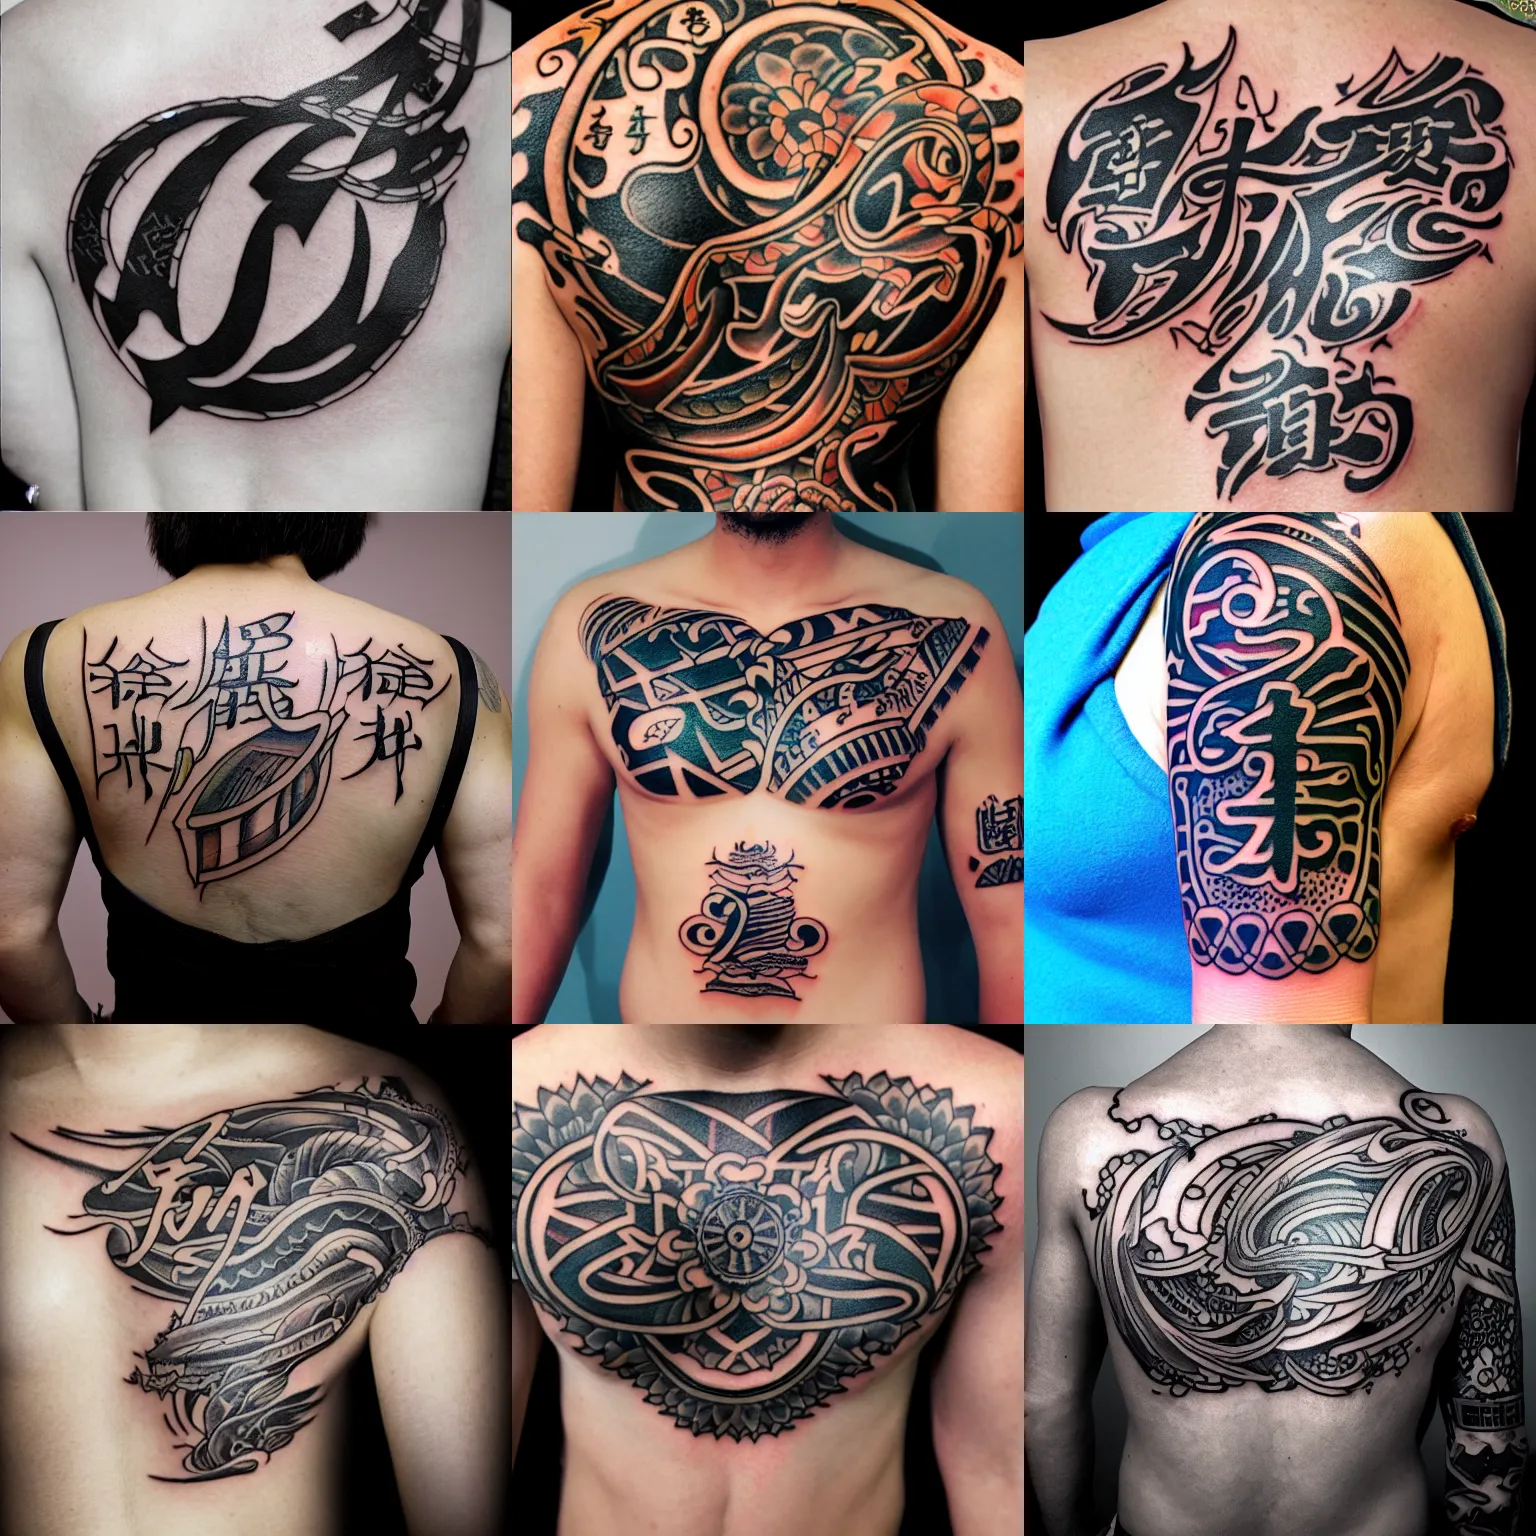 Share more than 177 dada tattoo